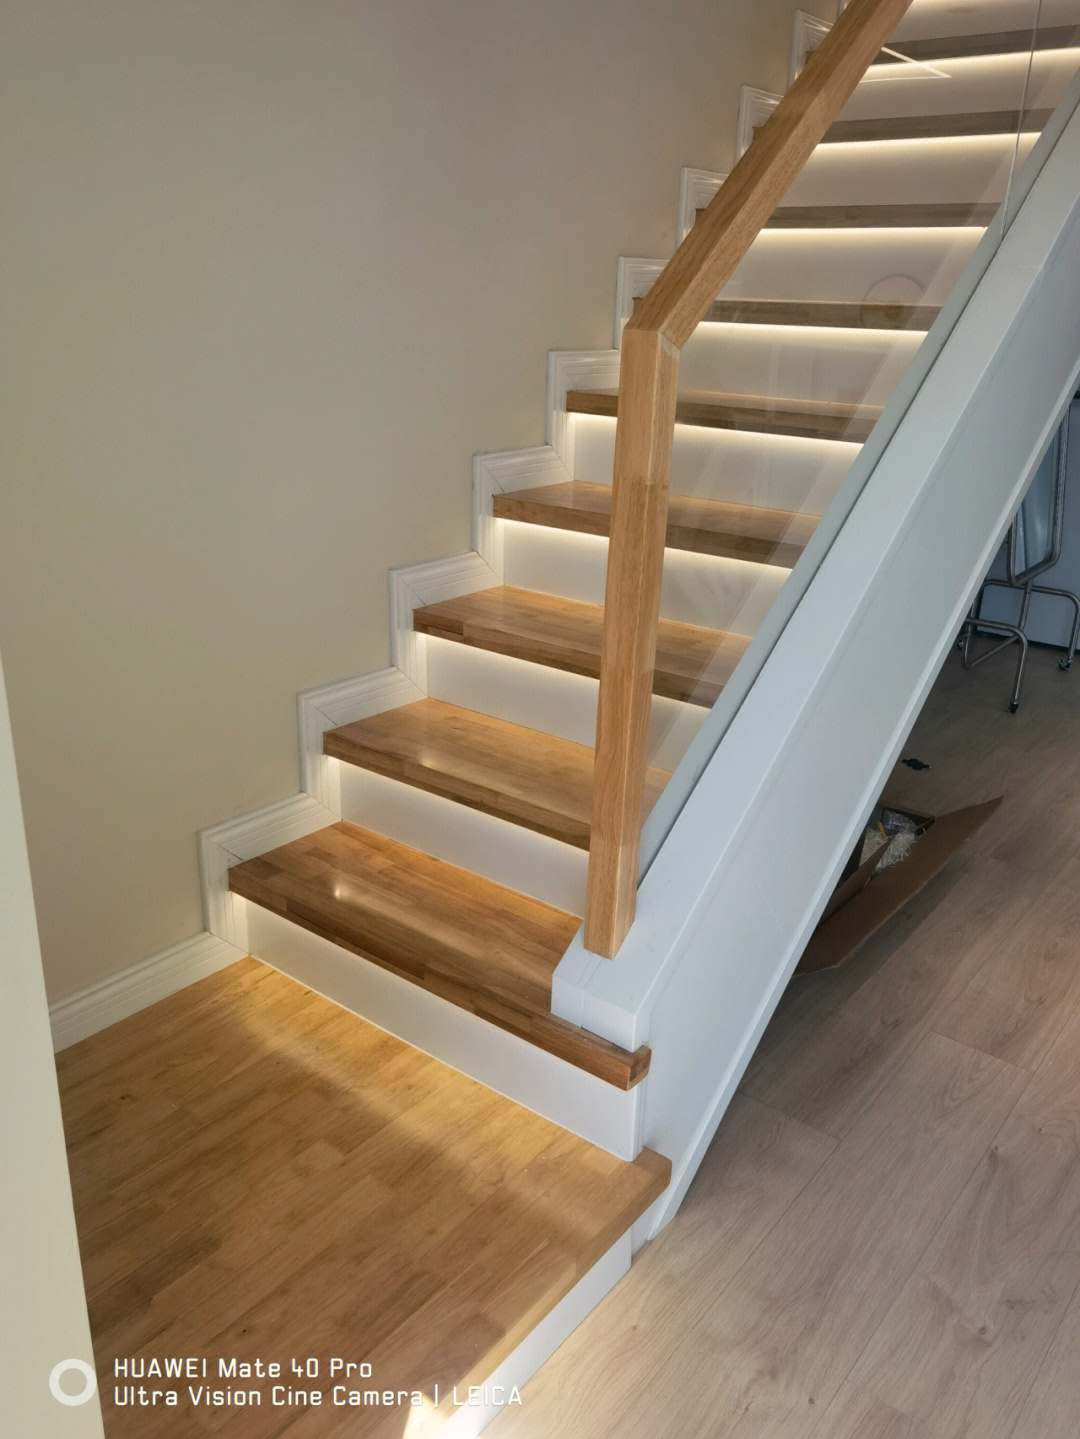 颜色用的橡胶木的原木色配白色#实木楼梯#楼梯#实木楼梯扶手